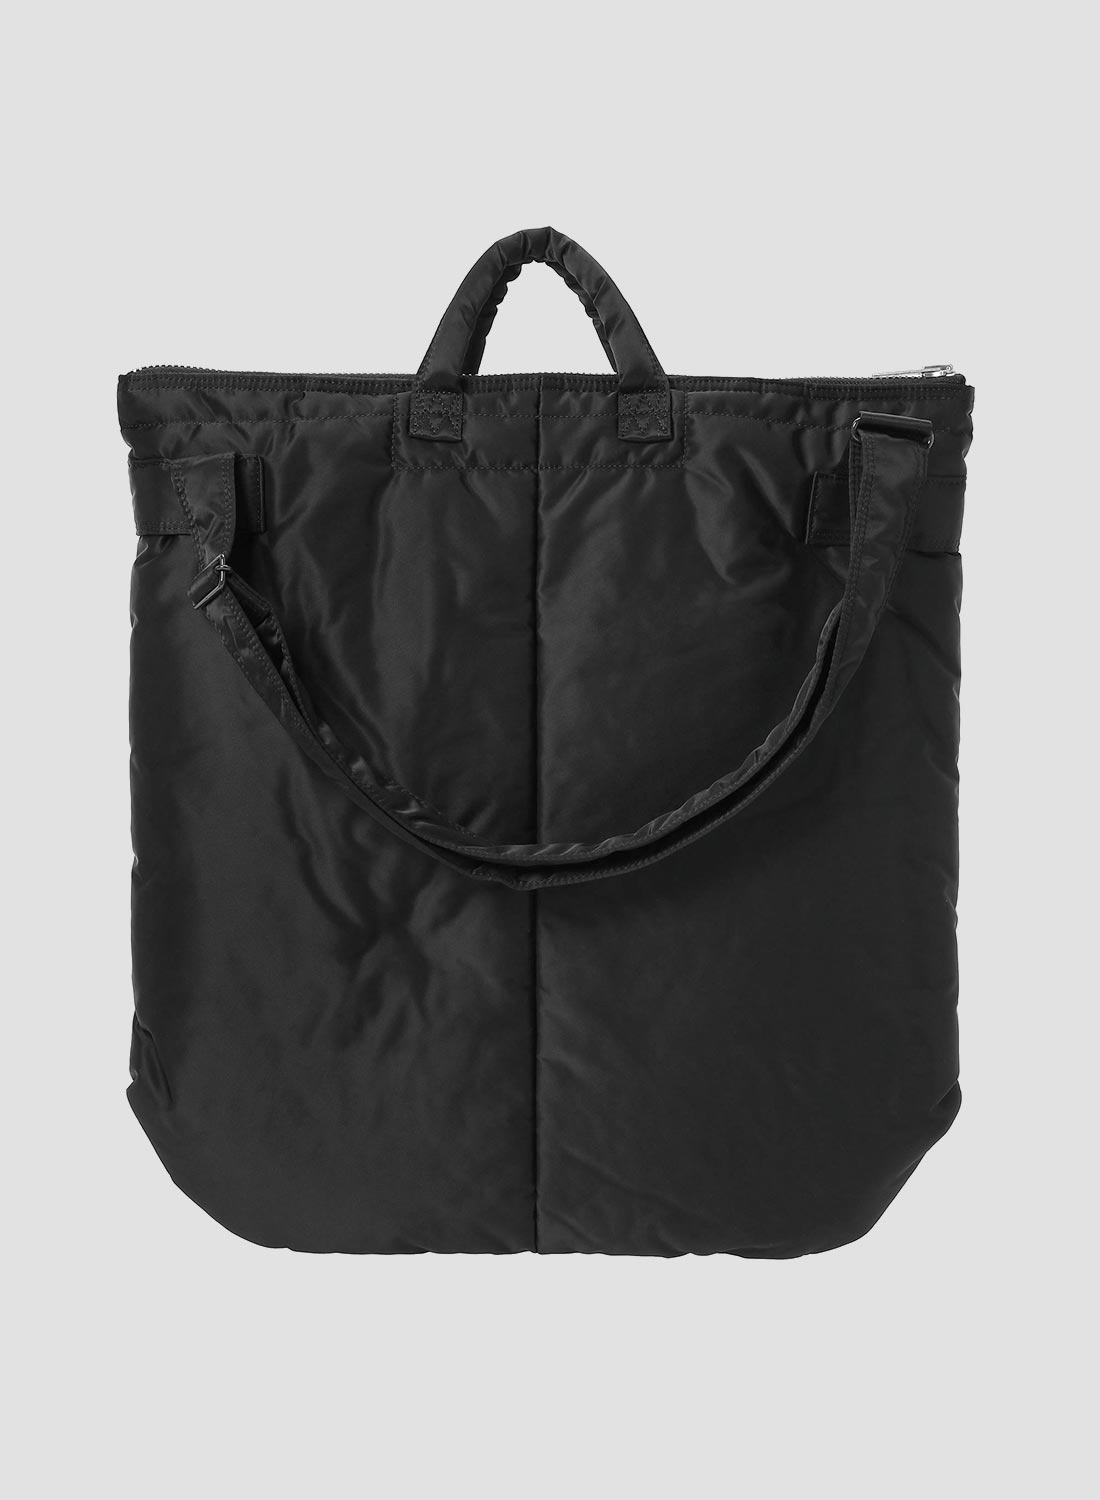 Porter-Yoshida & Co Tanker 2-Way Helmet Bag in Black - 4